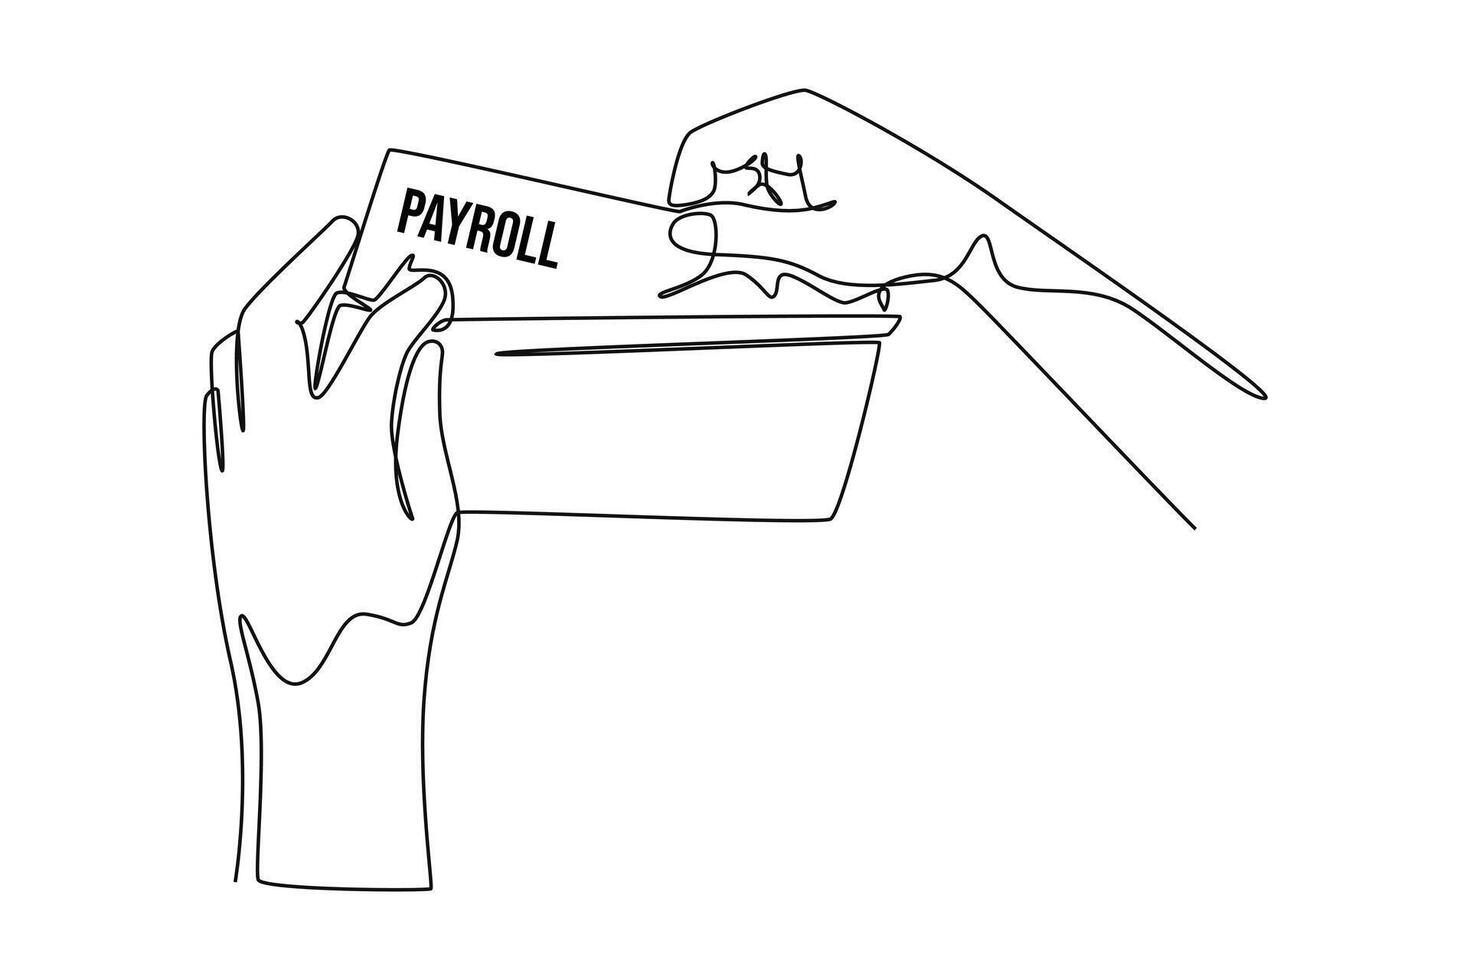 1 contínuo linha desenhando do salário folha de pagamento sistema ou empregado salários conceito. rabisco ilustração dentro simples linear estilo vetor